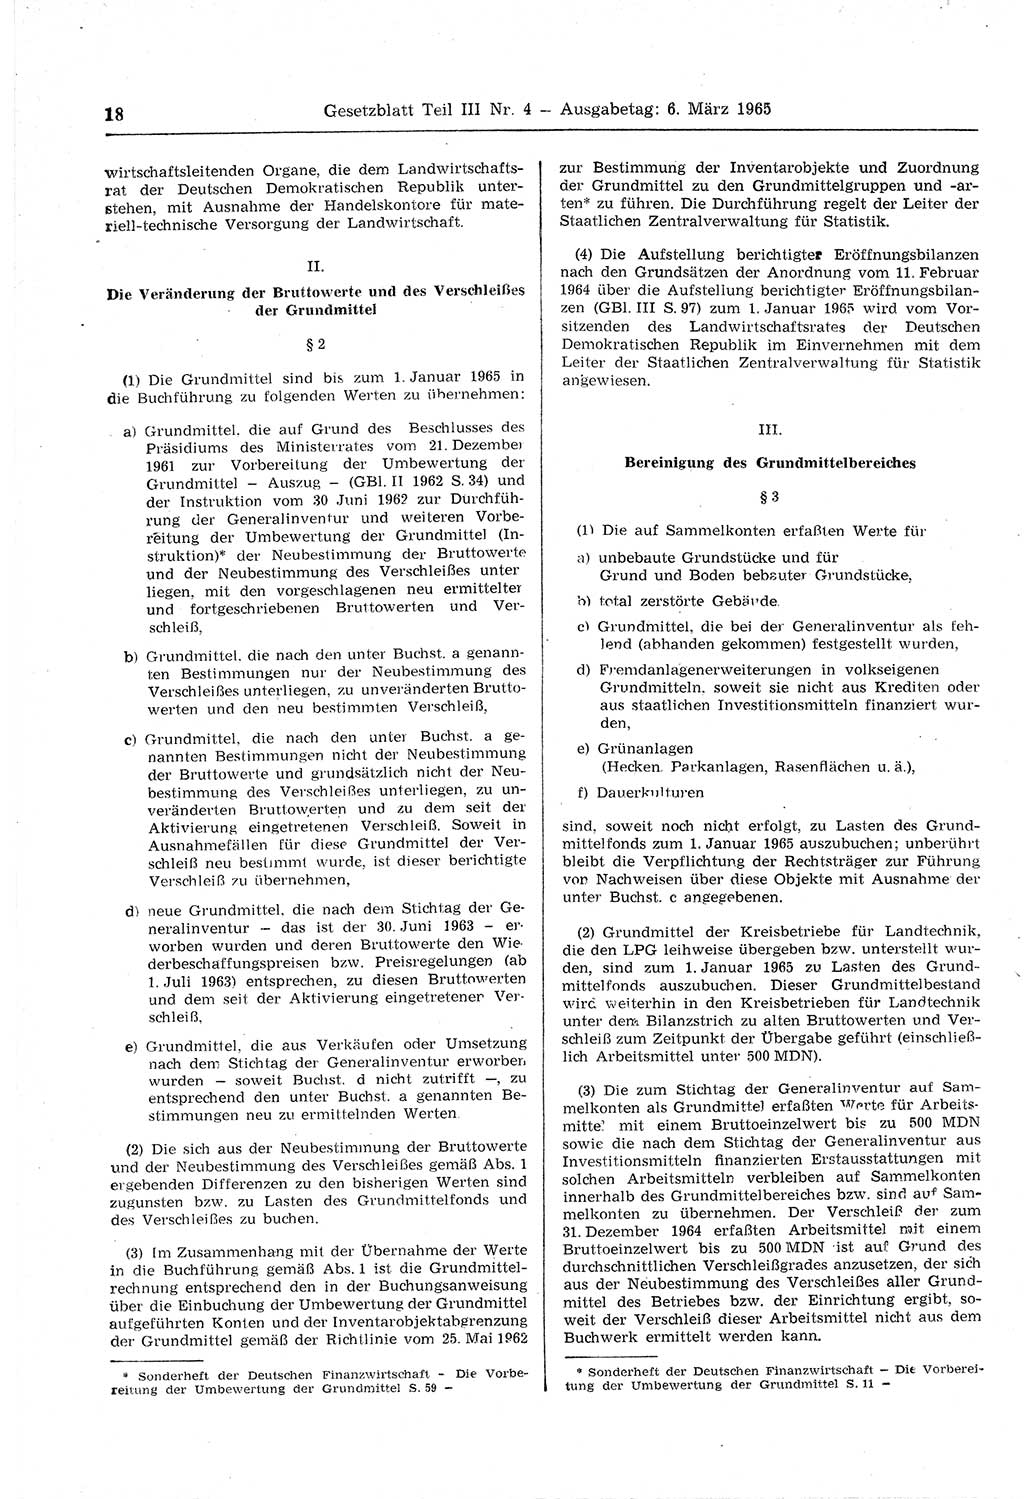 Gesetzblatt (GBl.) der Deutschen Demokratischen Republik (DDR) Teil ⅠⅠⅠ 1965, Seite 18 (GBl. DDR ⅠⅠⅠ 1965, S. 18)